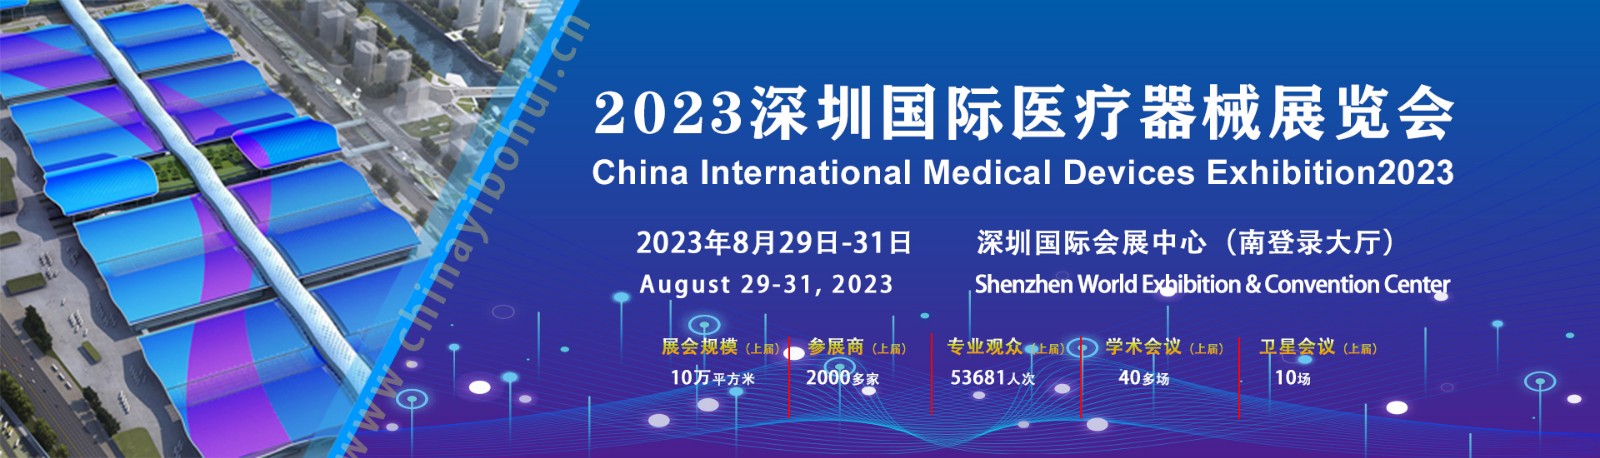 深圳国际医疗器械展览会2023年8月29-31日